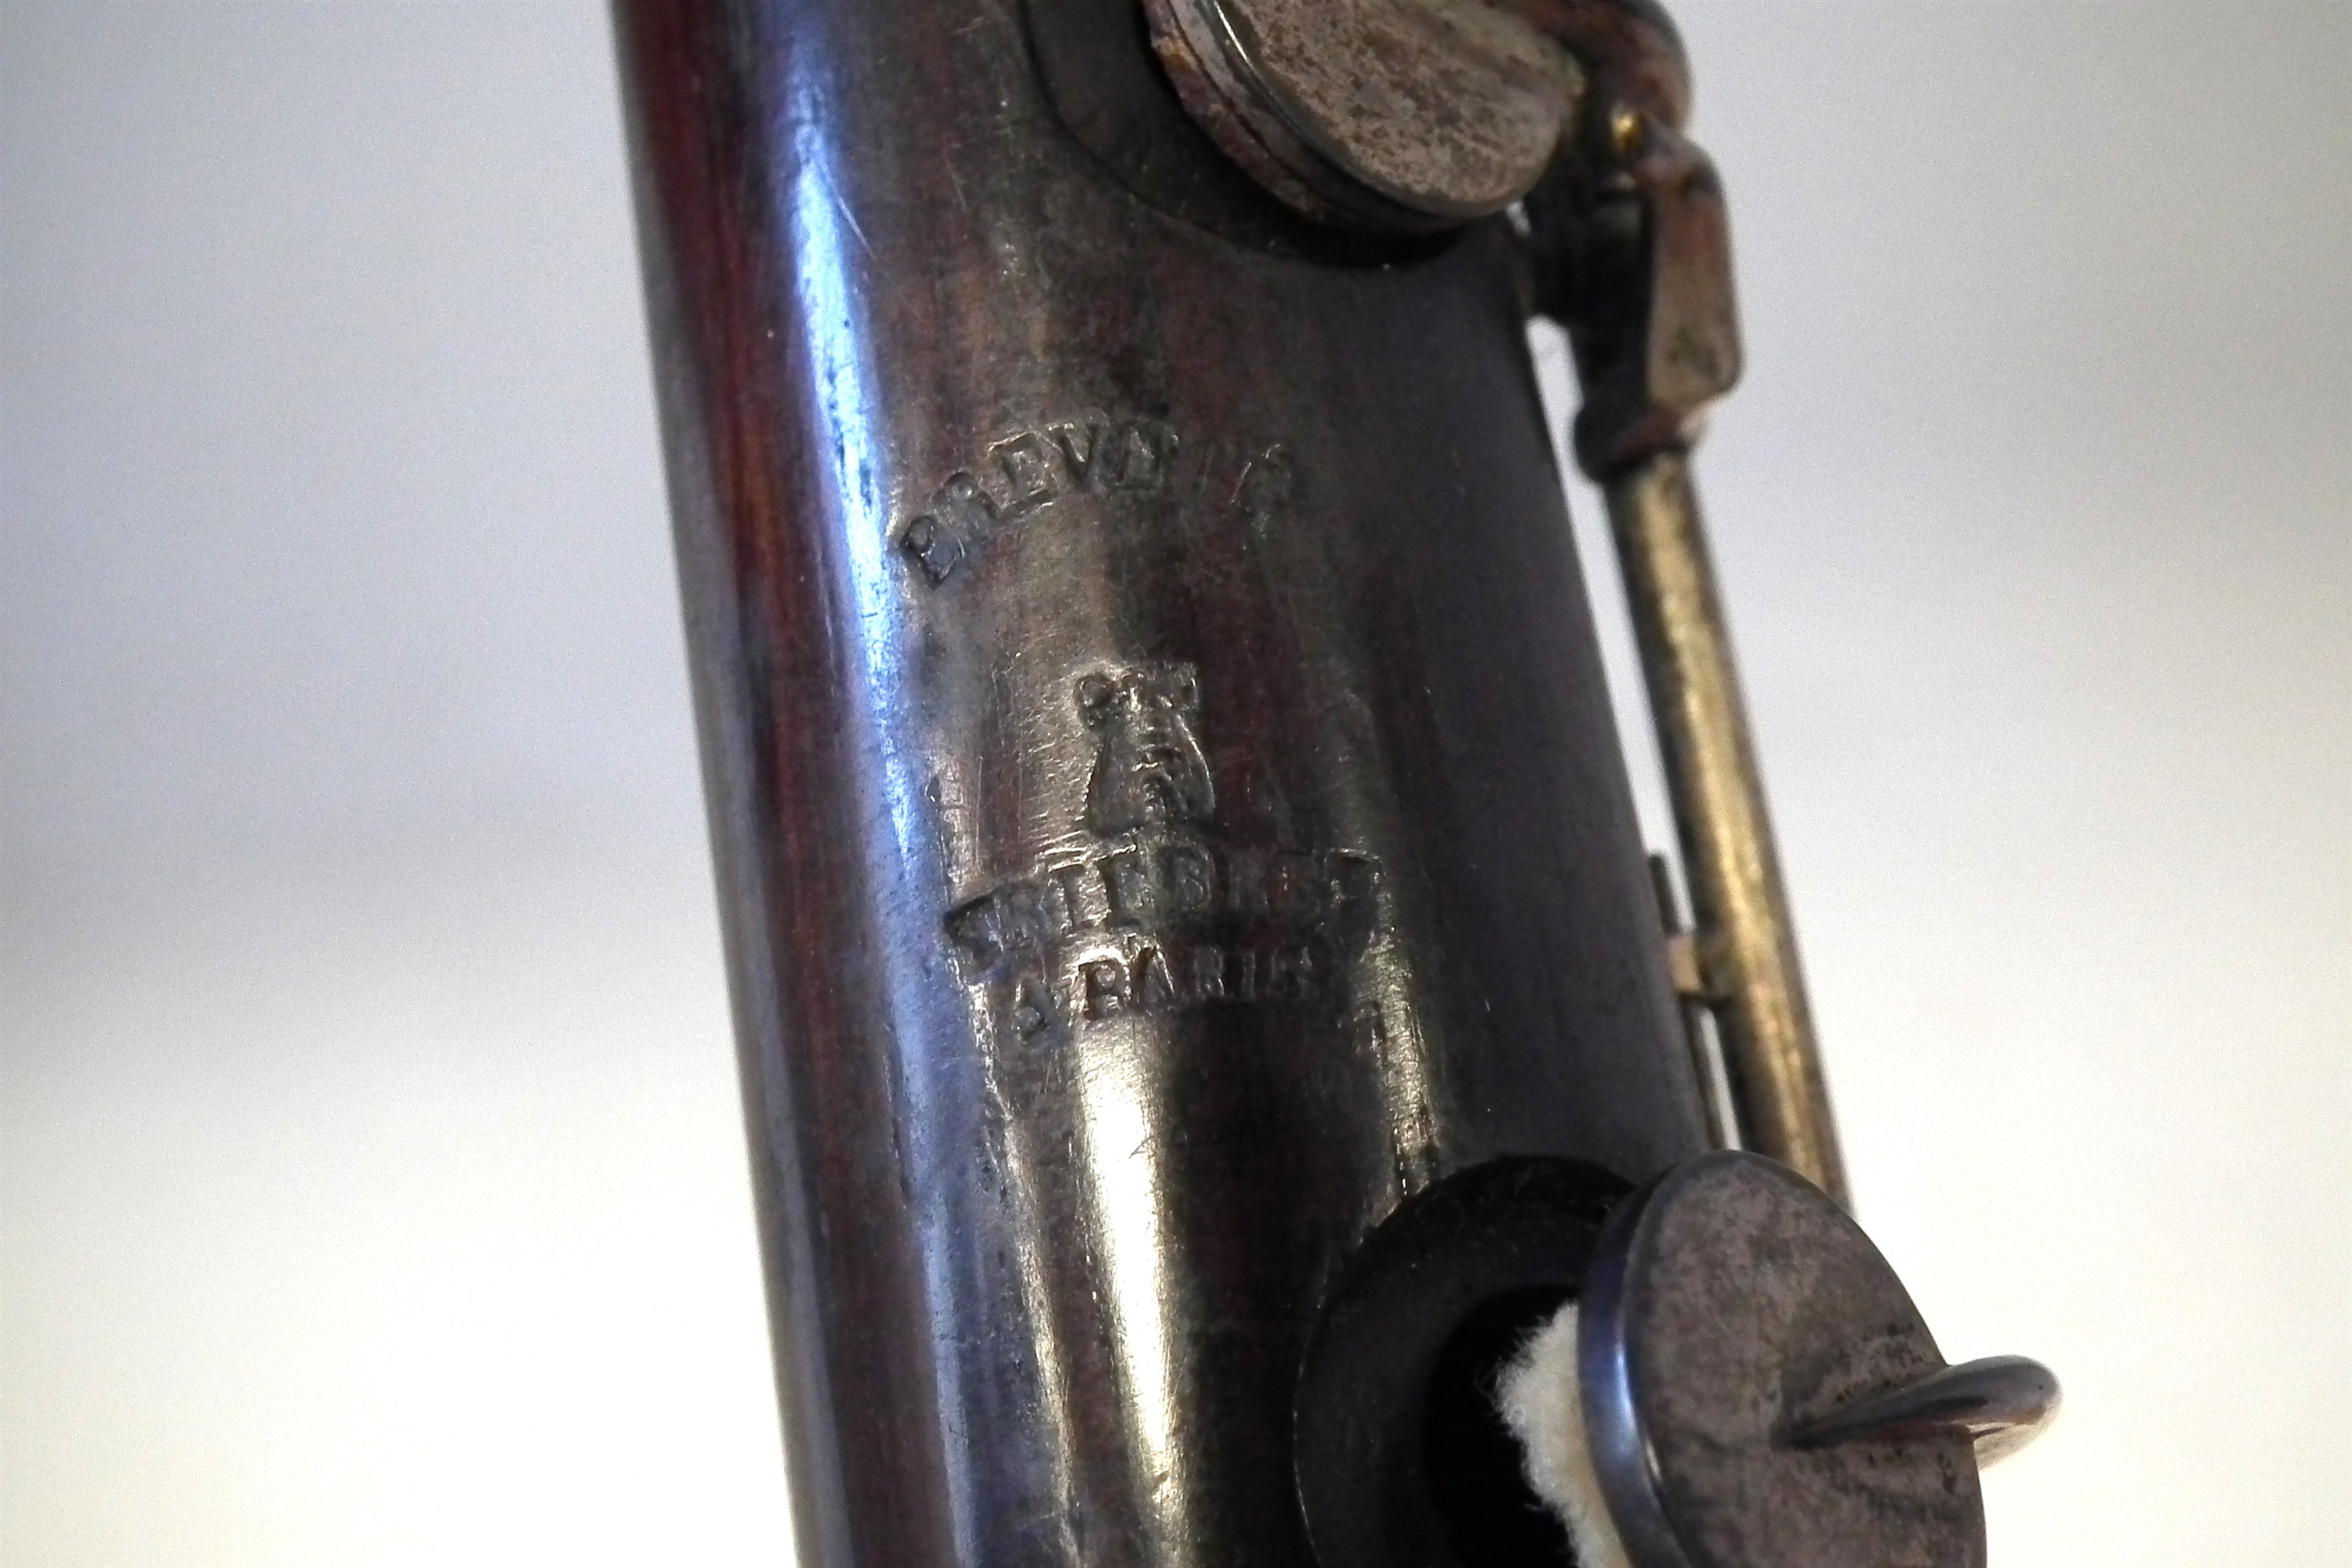 Brevete Paris cocus wood oboe - Image 4 of 9